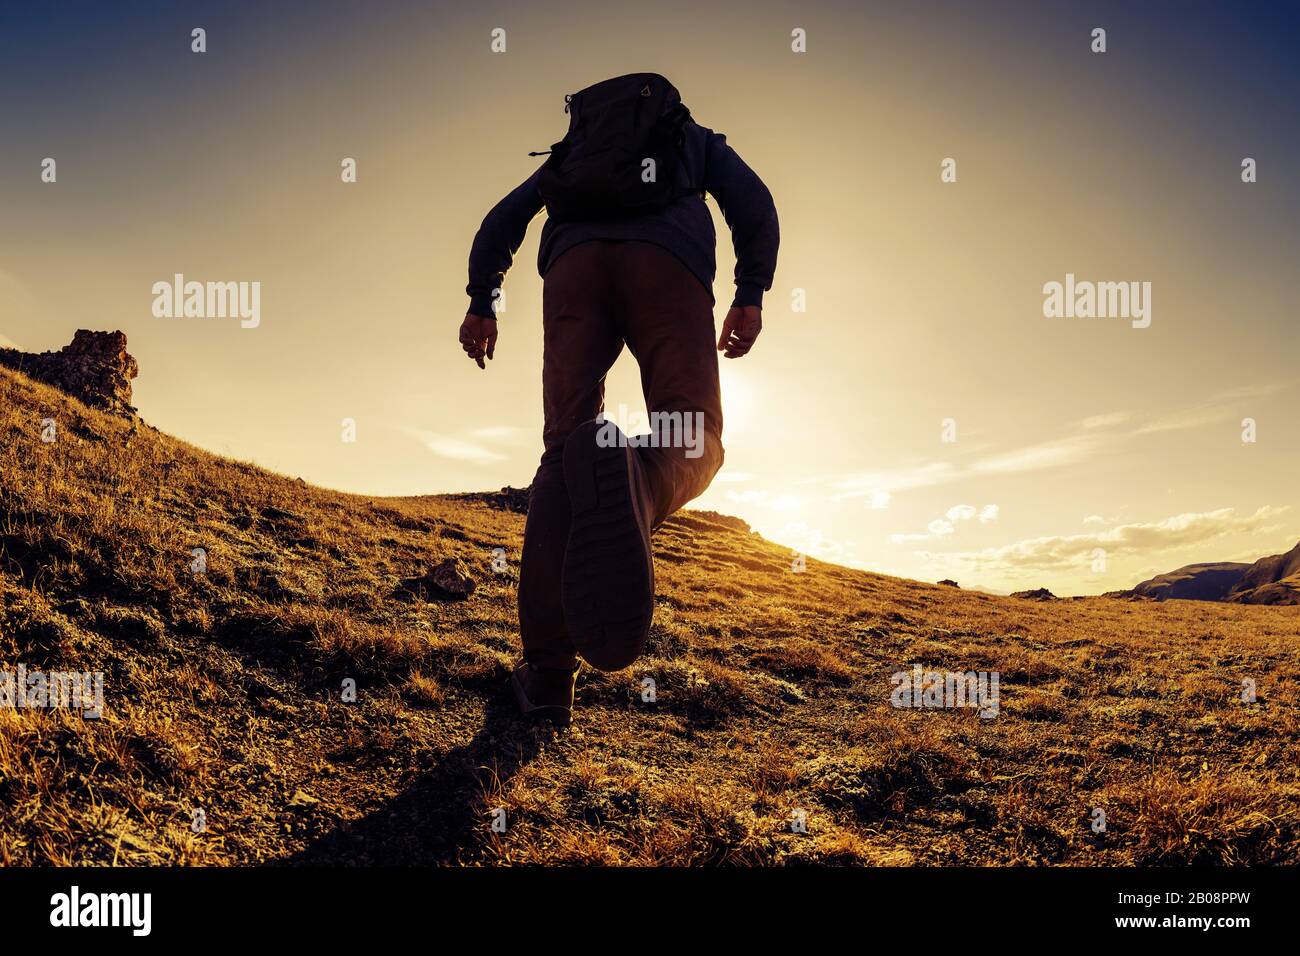 Unerkannte Reisende oder Wanderer wandern in der Berggegend bei Sonnenuntergang Stockfoto